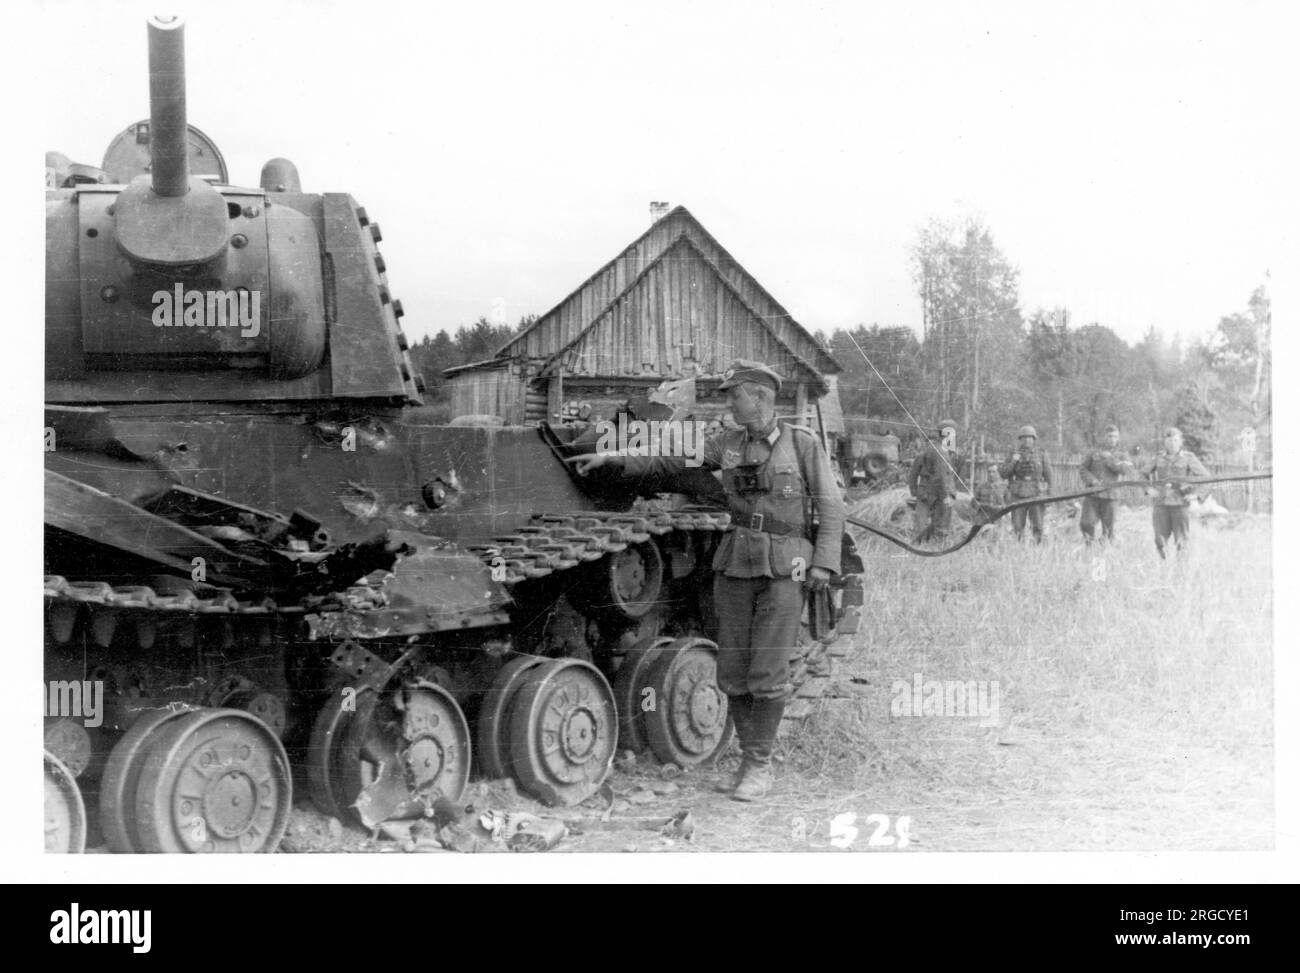 Un char lourd soviétique 'KV-1 Shielded', renversé par un incendie anti-char allemand, avec des dommages indiqués par un soldat allemand envahissant. Le 'KV-1 Shielded' était un kV-1 standard avec une armure supplémentaire rivée sur la tourelle et les parties de la coque. L'armure supplémentaire est visible sur le côté de la tourelle. (Les chars Kliment Voroshilov (KV) sont une série de chars lourds soviétiques nommés d'après le commissaire de la défense soviétique et le politicien Kliment Voroshilov) Banque D'Images